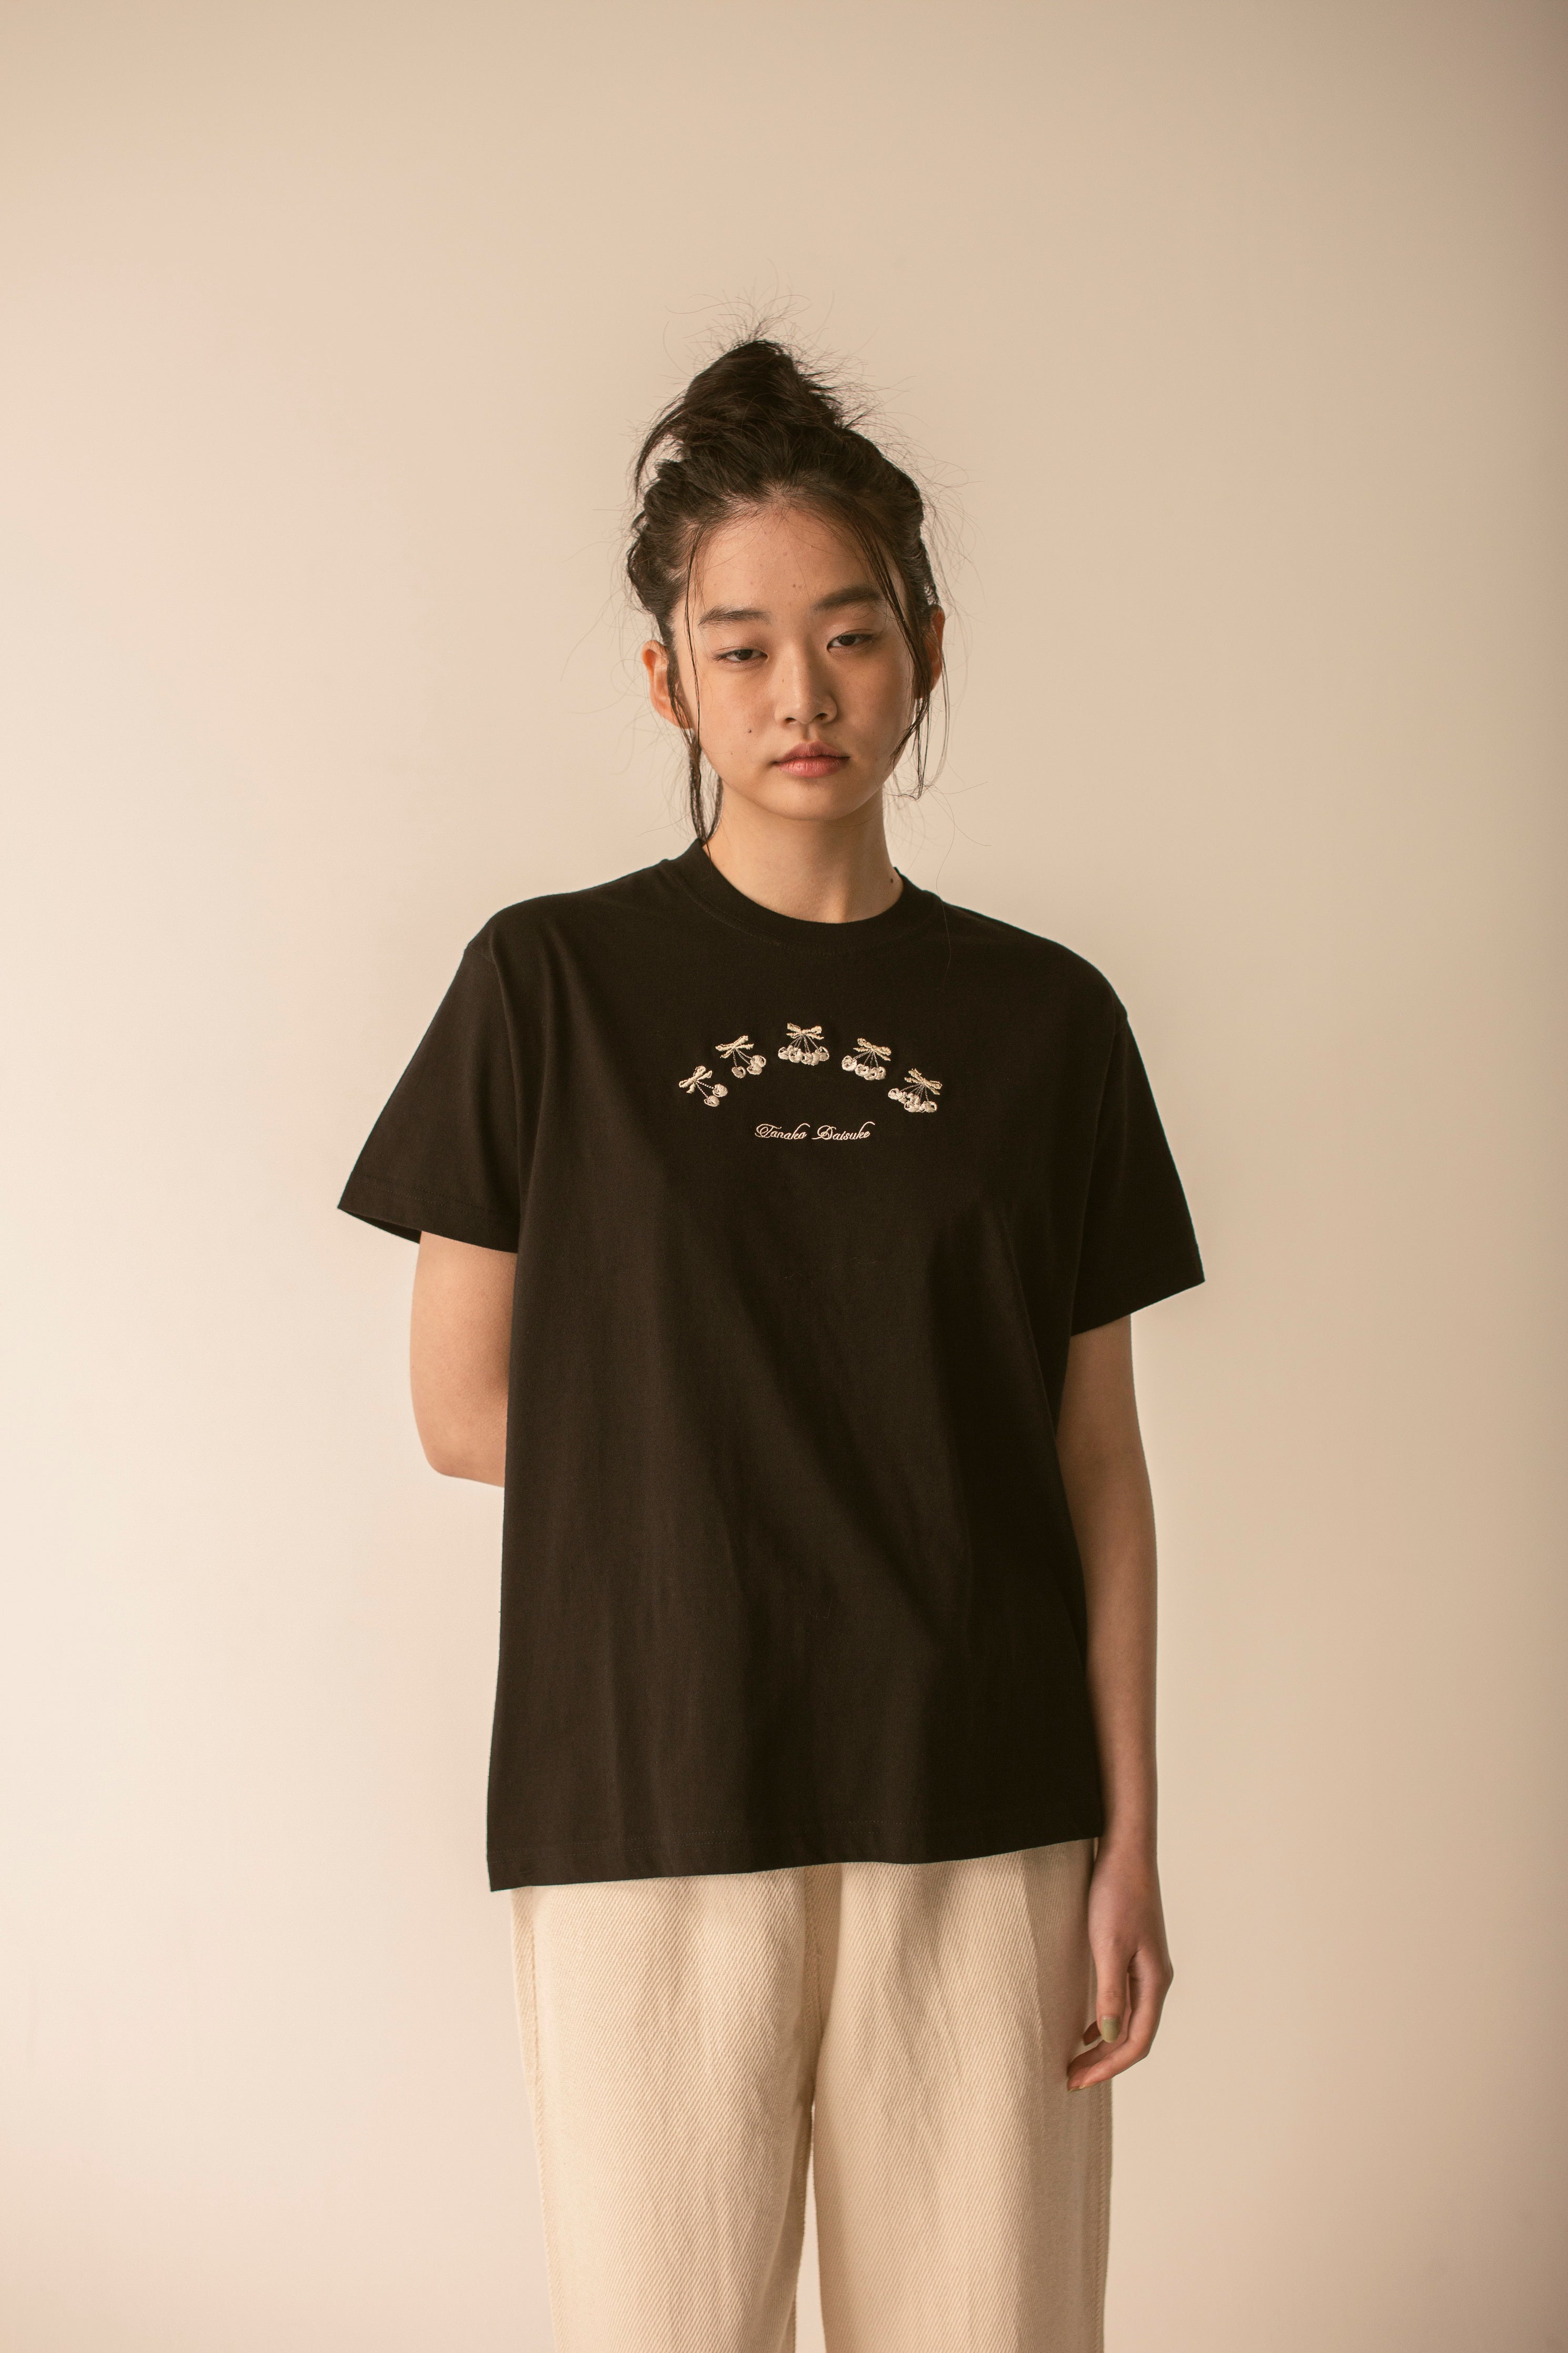 tanaka daisuke AKKIGAI Black T-shirt 01 - Tシャツ/カットソー(半袖 